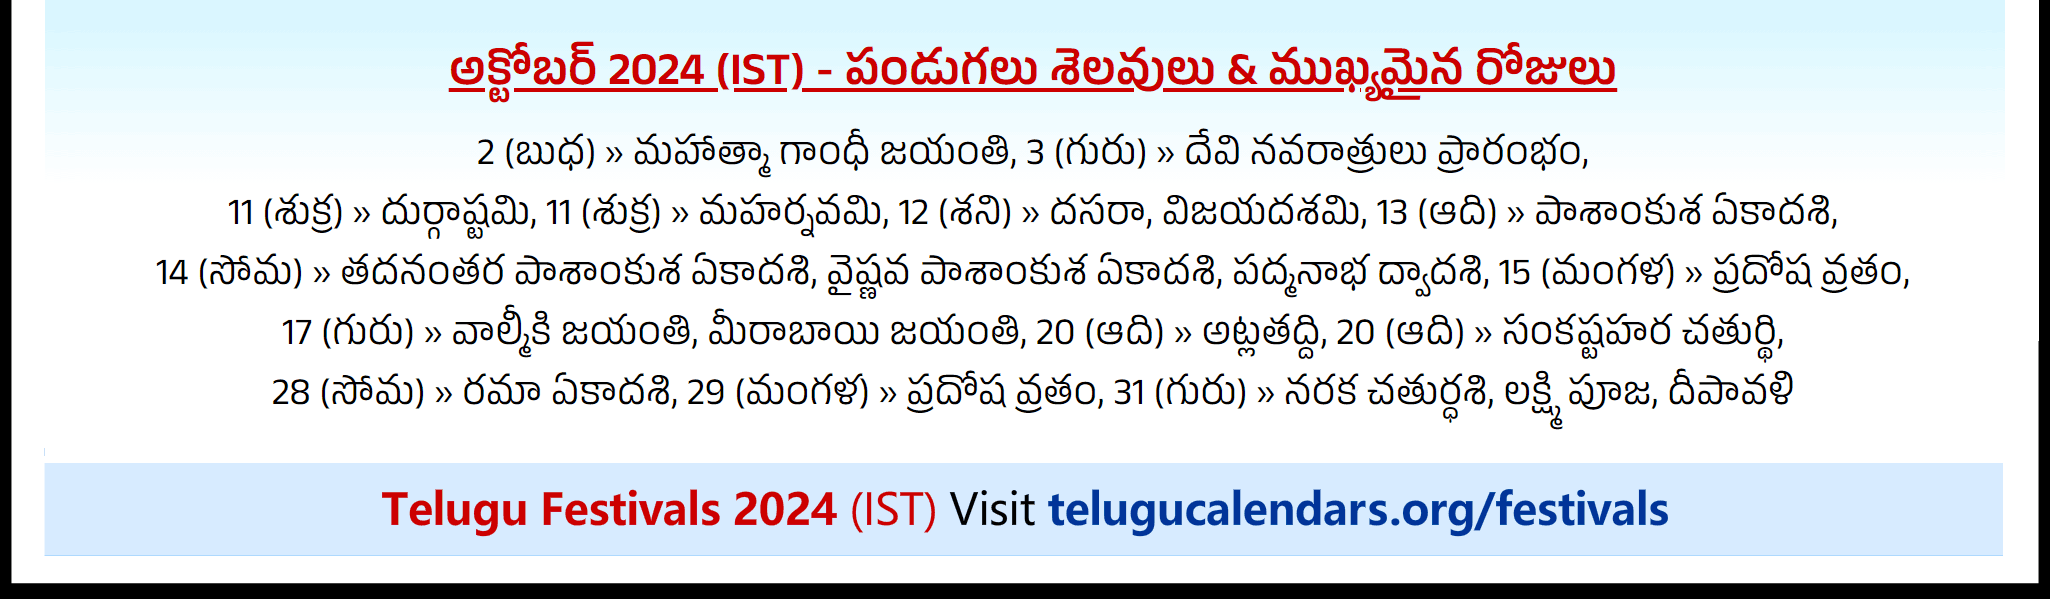 Telugu Festivals 2024 October Perth